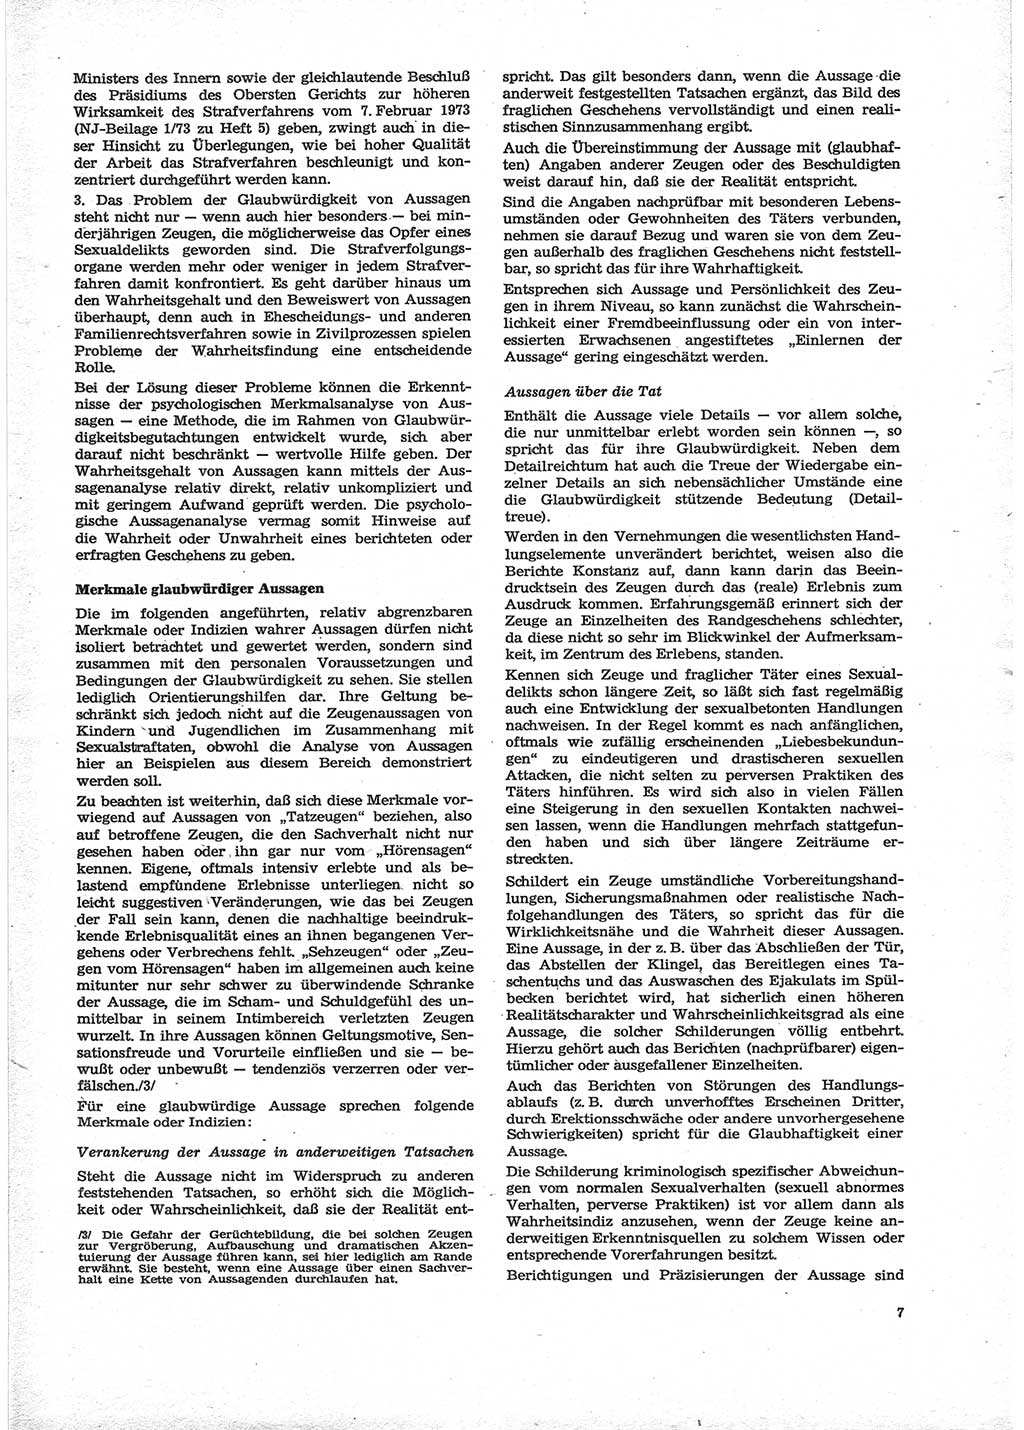 Neue Justiz (NJ), Zeitschrift für Recht und Rechtswissenschaft [Deutsche Demokratische Republik (DDR)], 28. Jahrgang 1974, Seite 7 (NJ DDR 1974, S. 7)